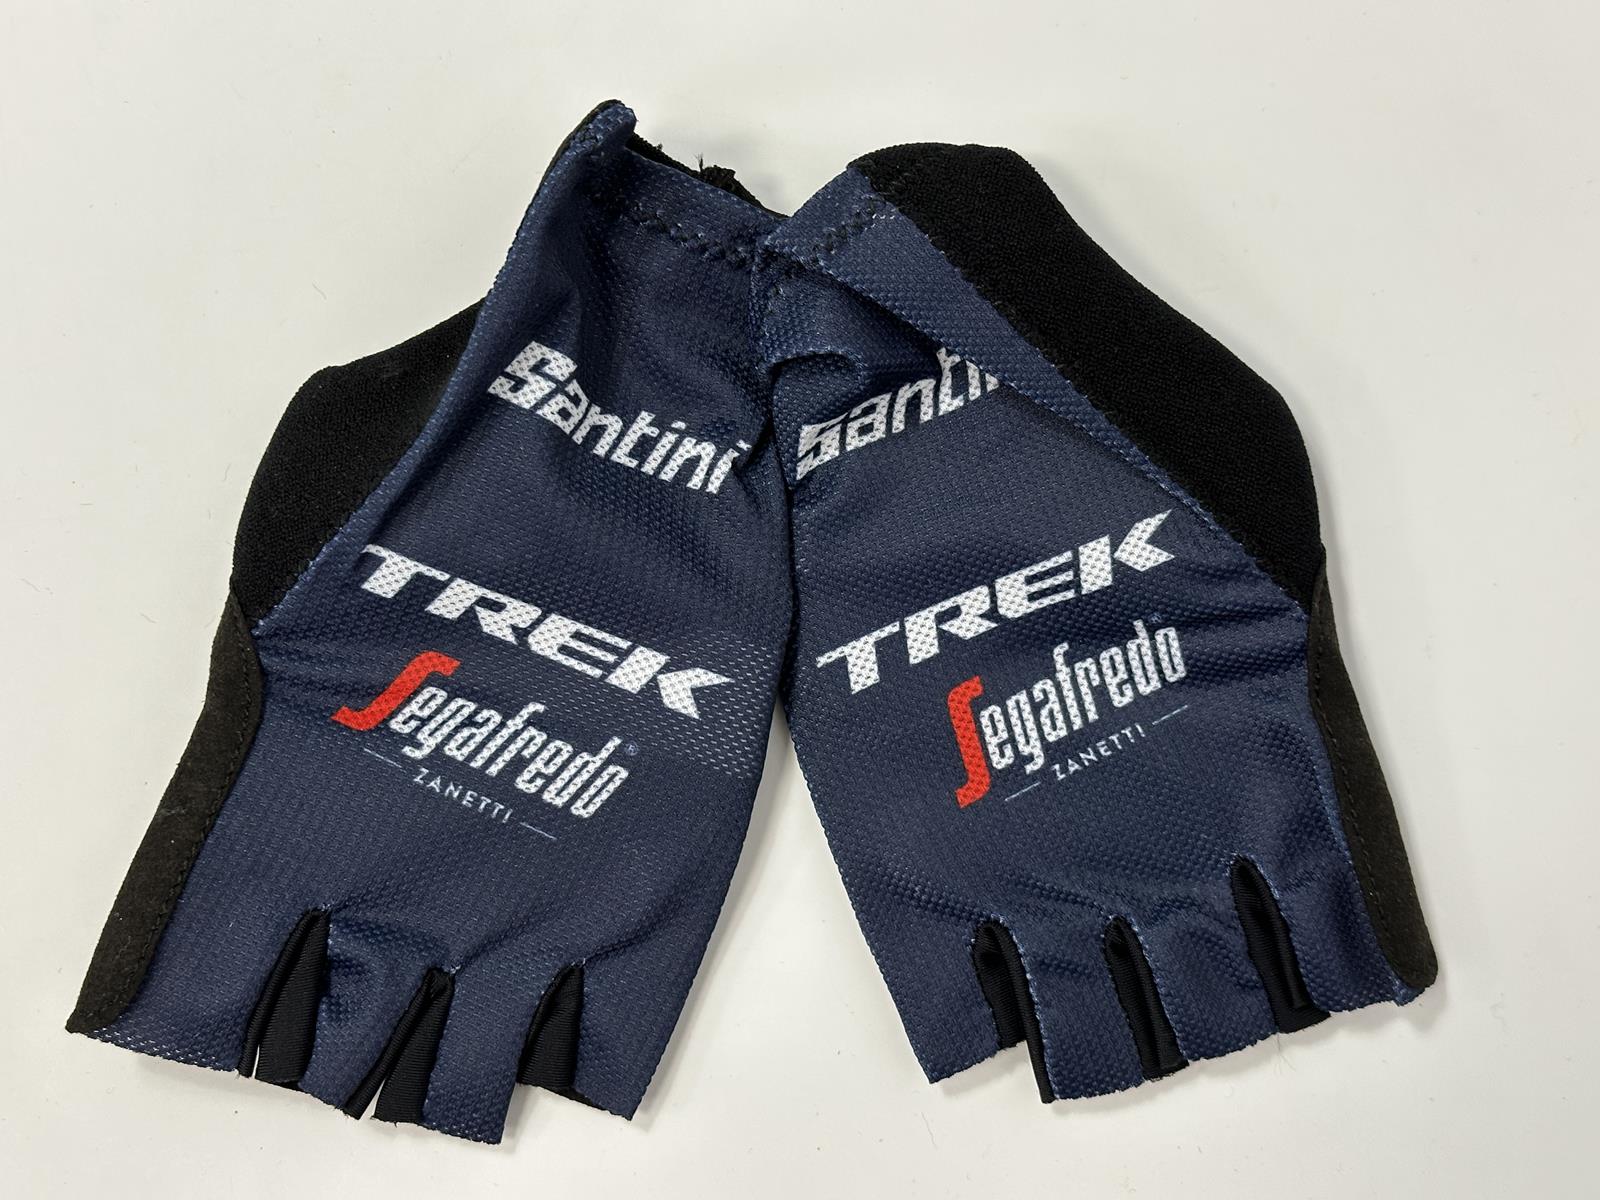 Trek Segafredo - Fingerless Plume Gloves by Santini